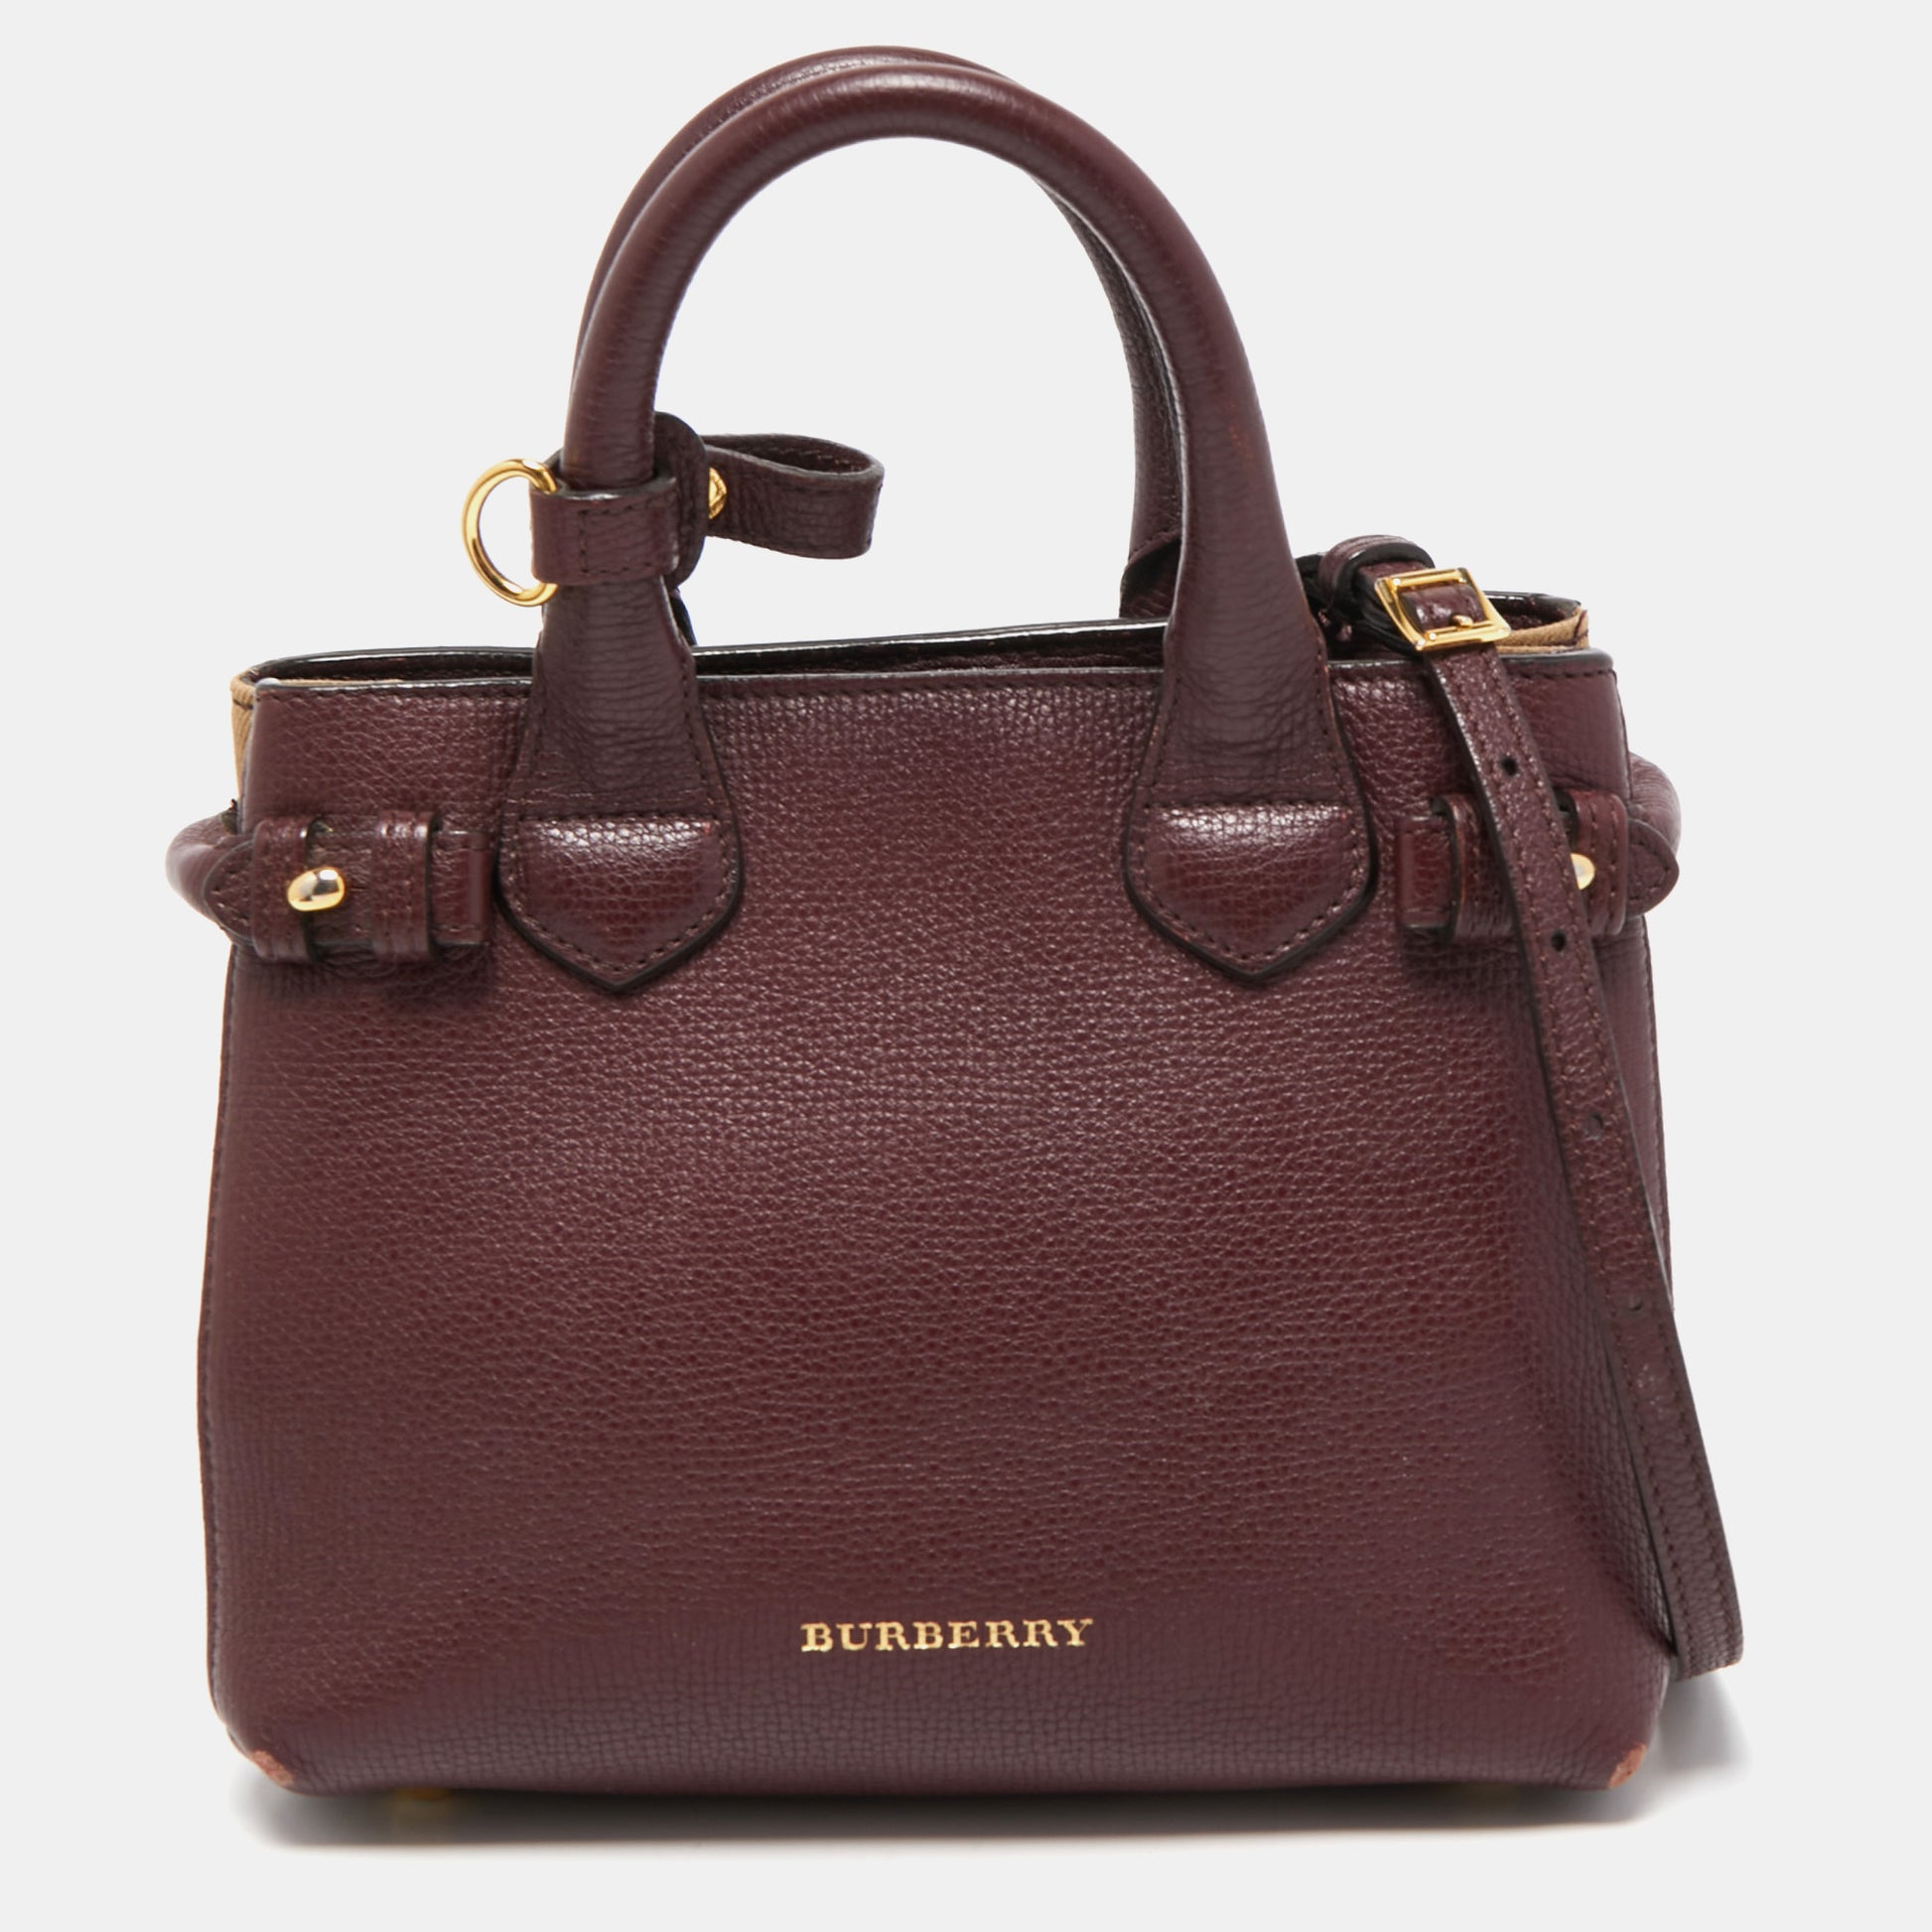 Burberry's Burberry House Check Handle Bag - Brown Handle Bags